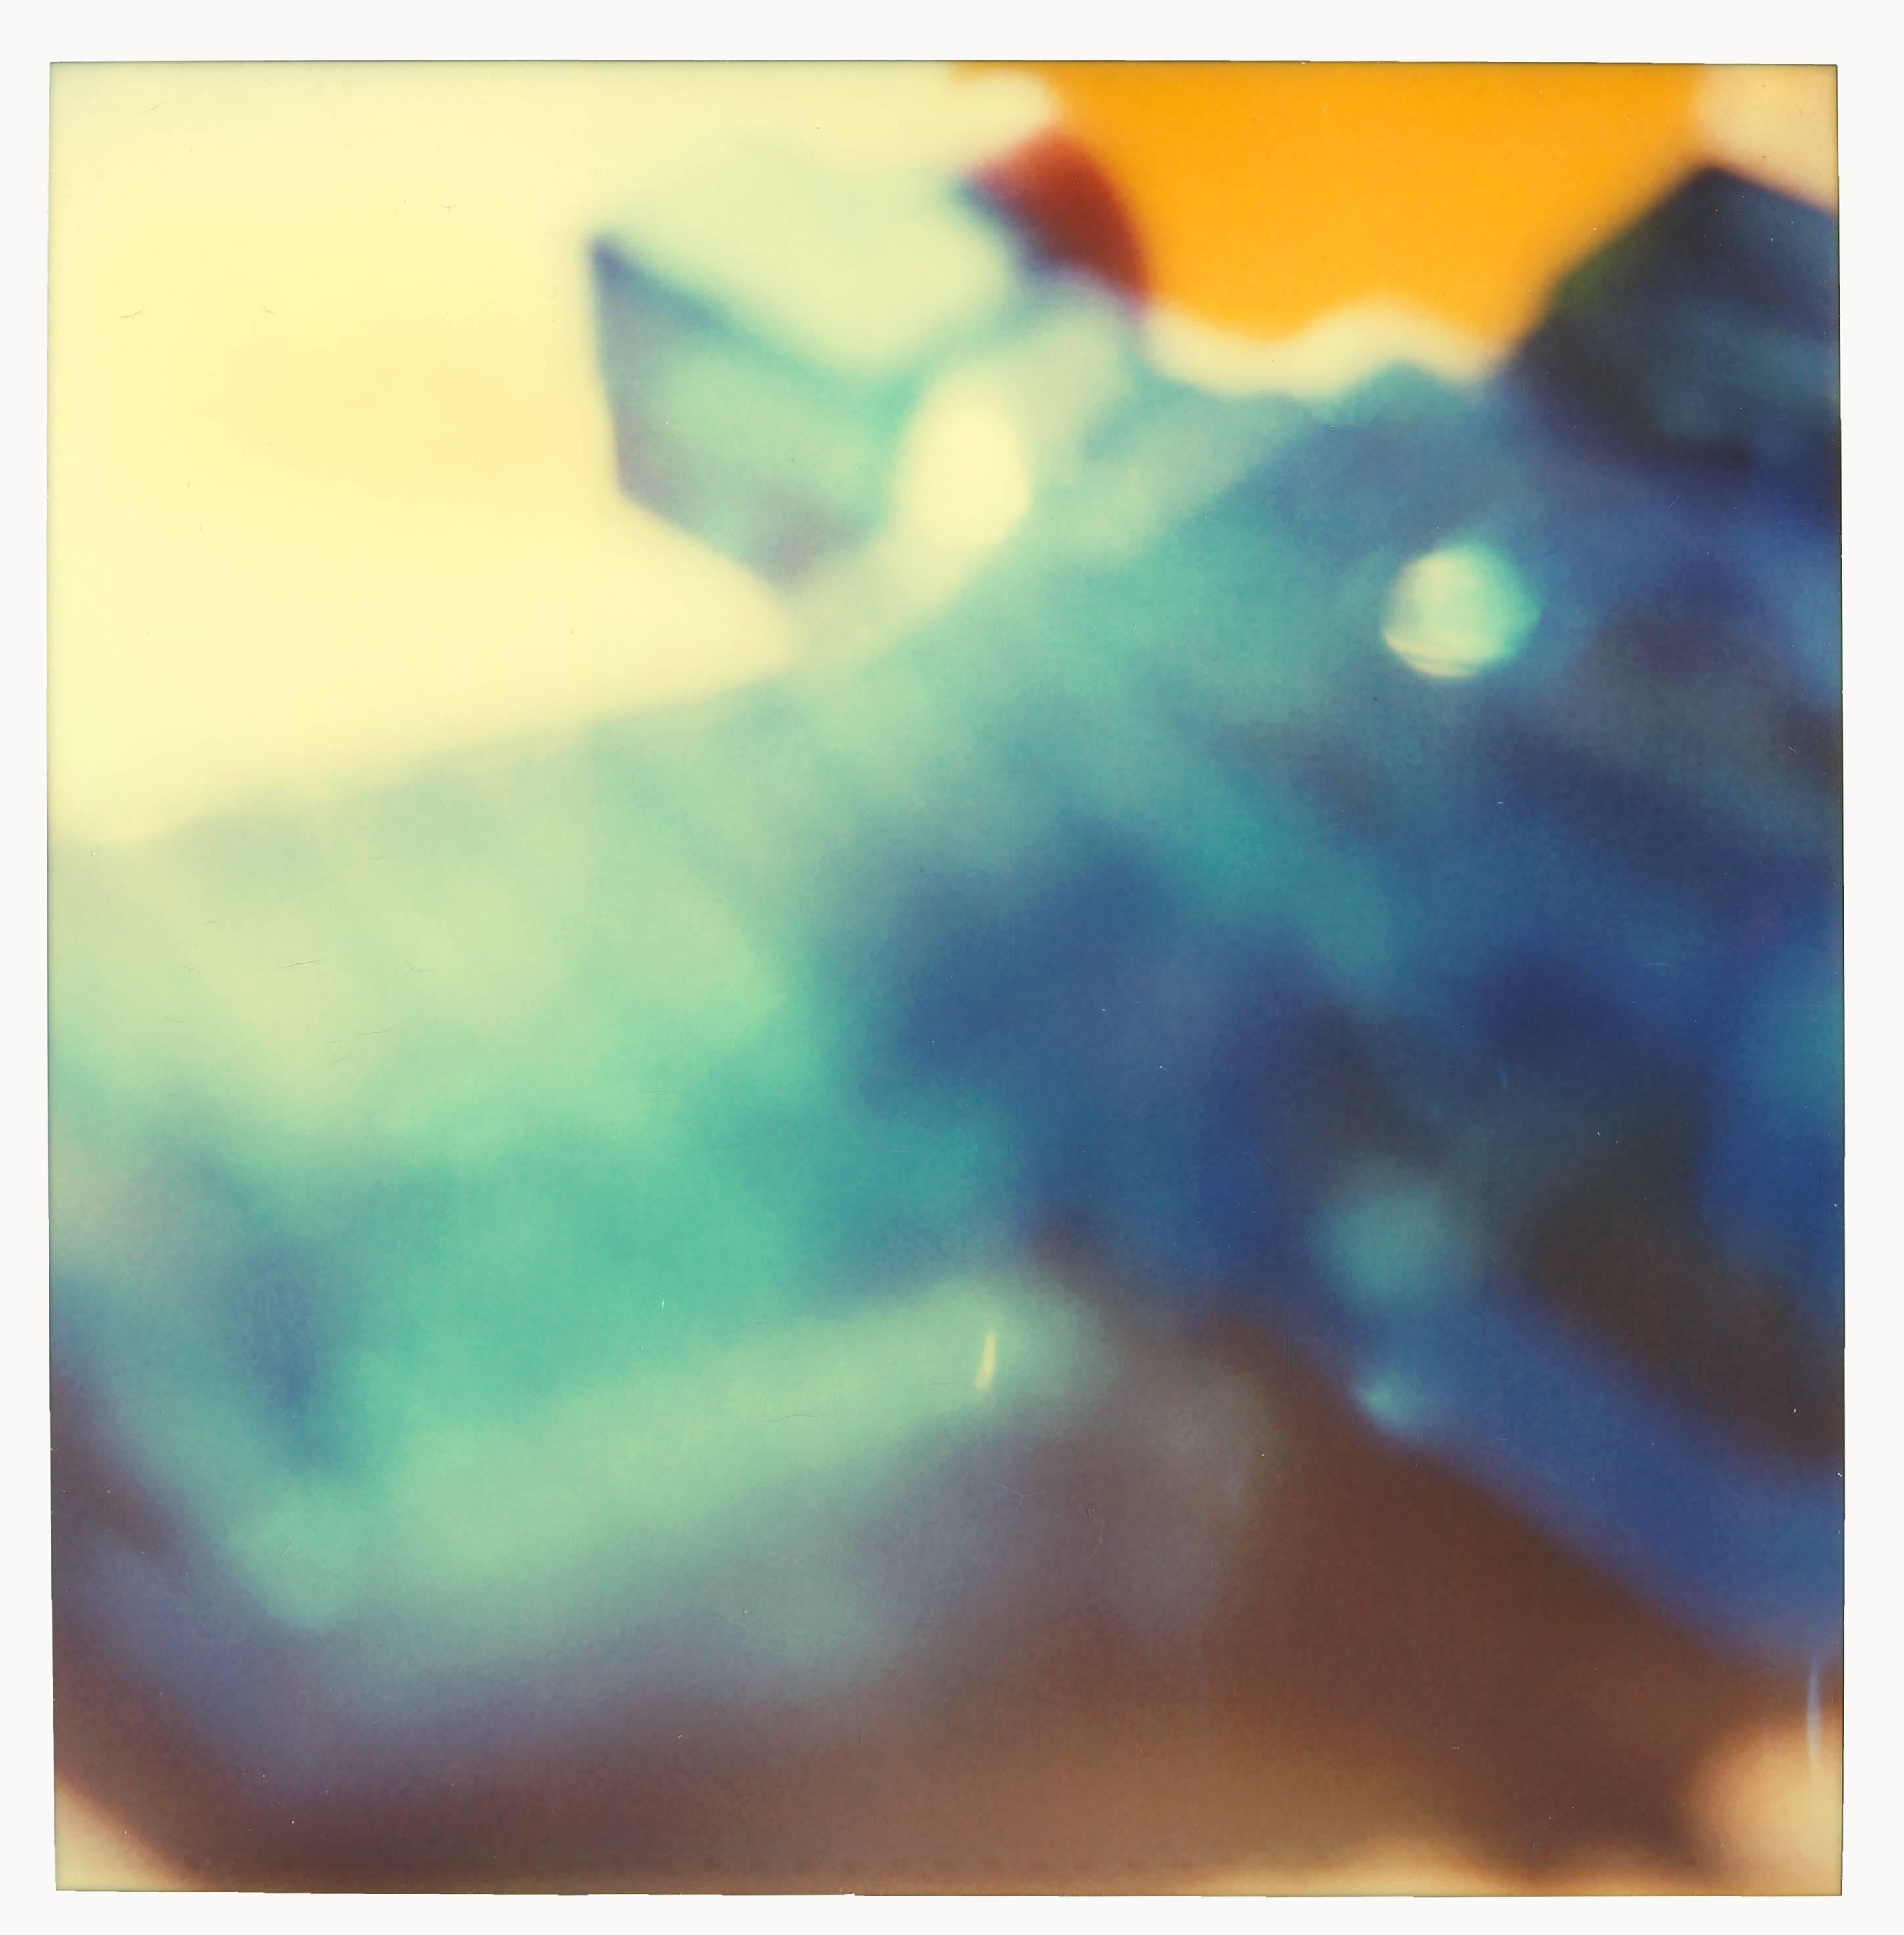 Pistolet à eau bleu - 29 Palms, CA, diptyque - Photograph de Stefanie Schneider